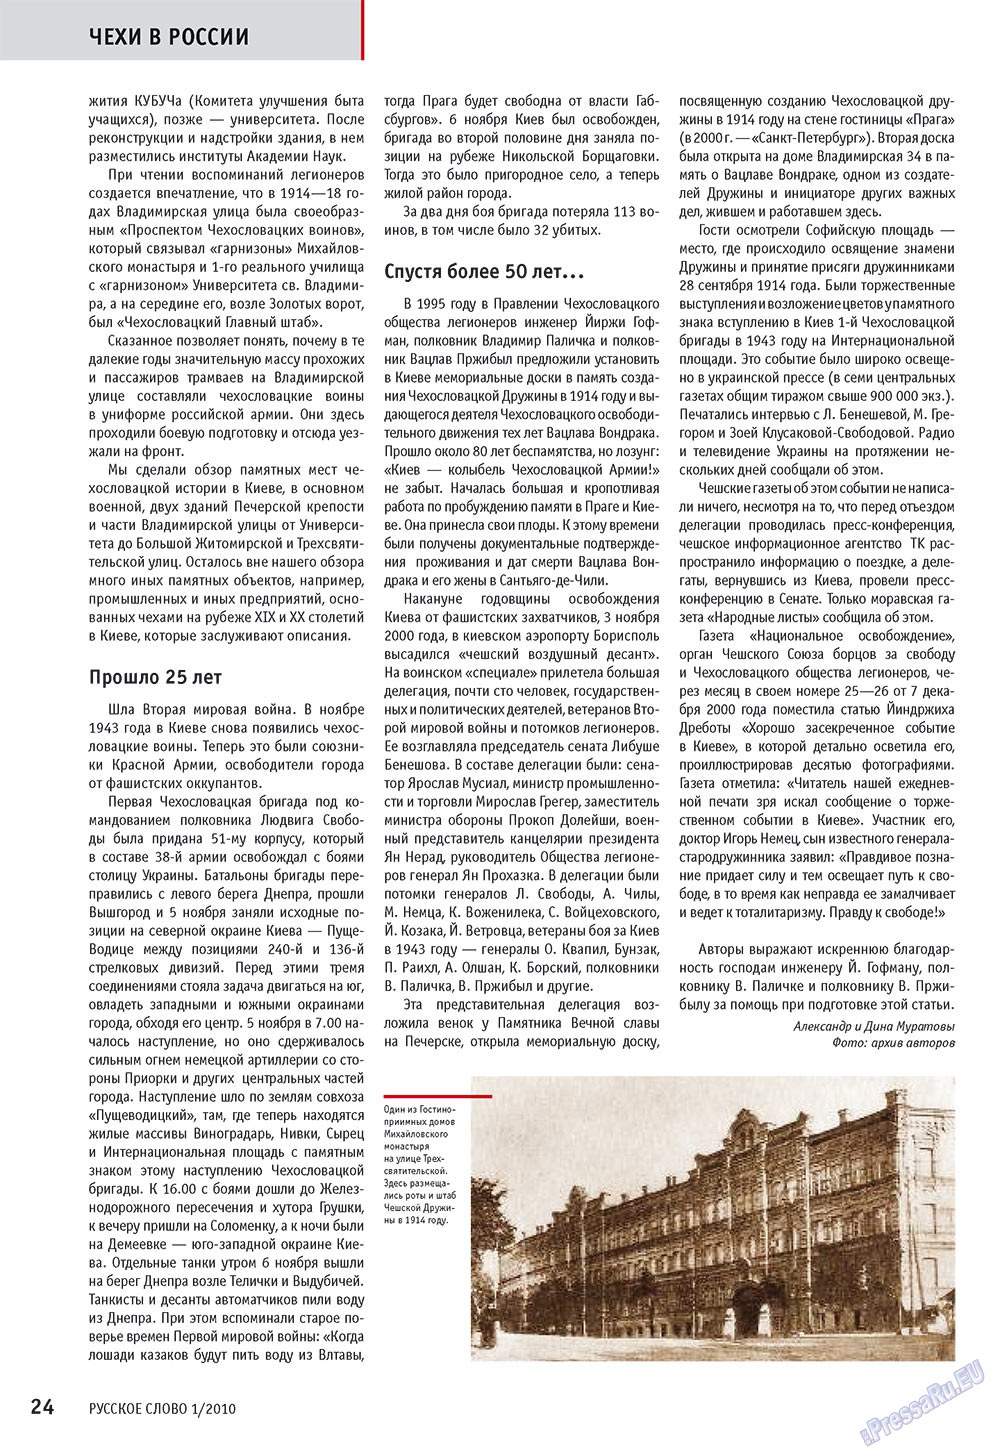 Русское слово, журнал. 2010 №1 стр.26